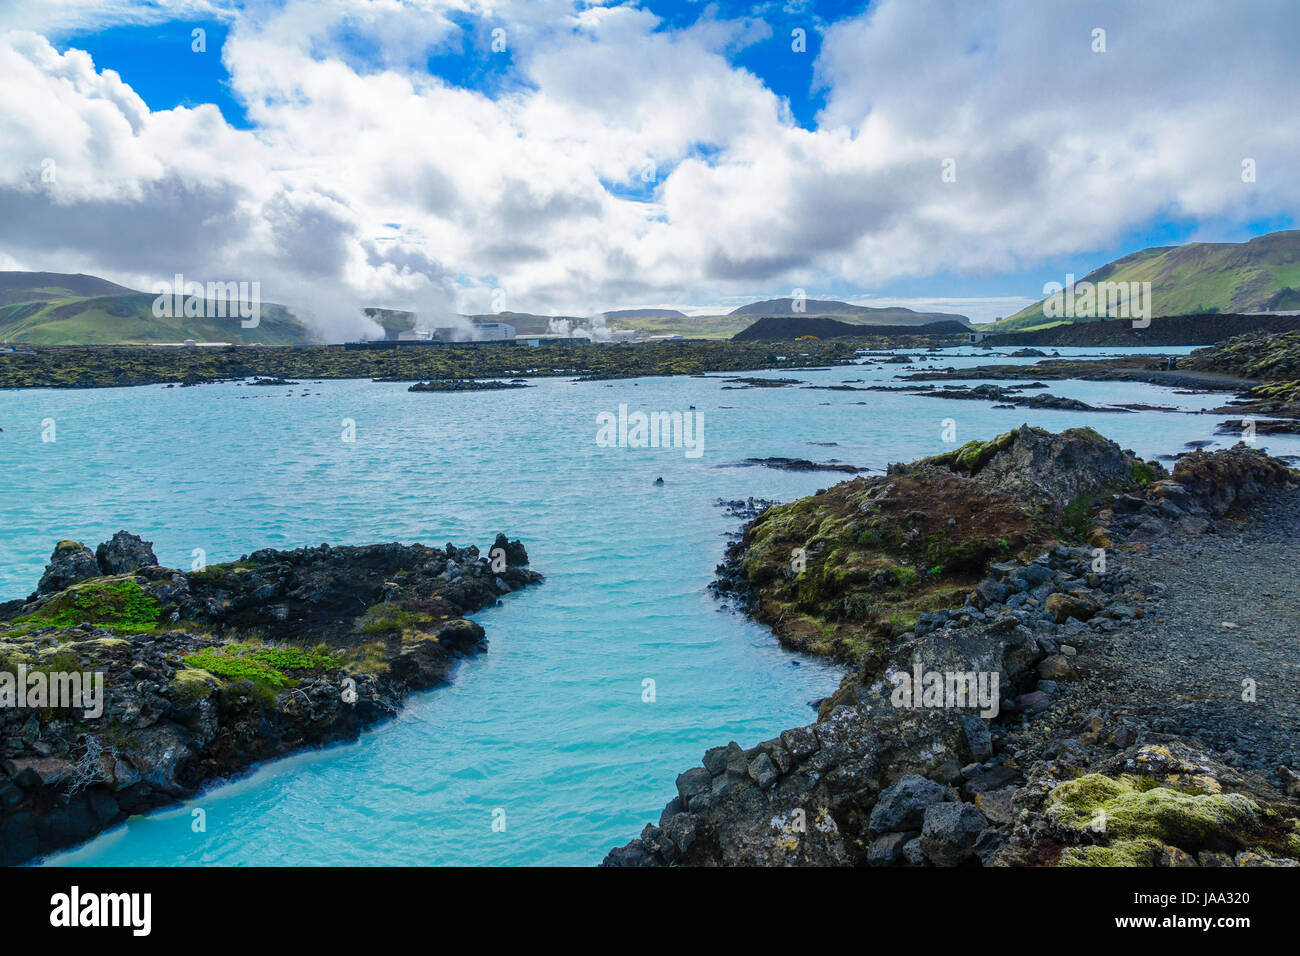 Paysage volcanique et piscines d'eau chaude près du lagon bleu, dans un champ de lave en Grindavik sur la péninsule de Reykjanes, au sud-ouest de l'Islande Banque D'Images